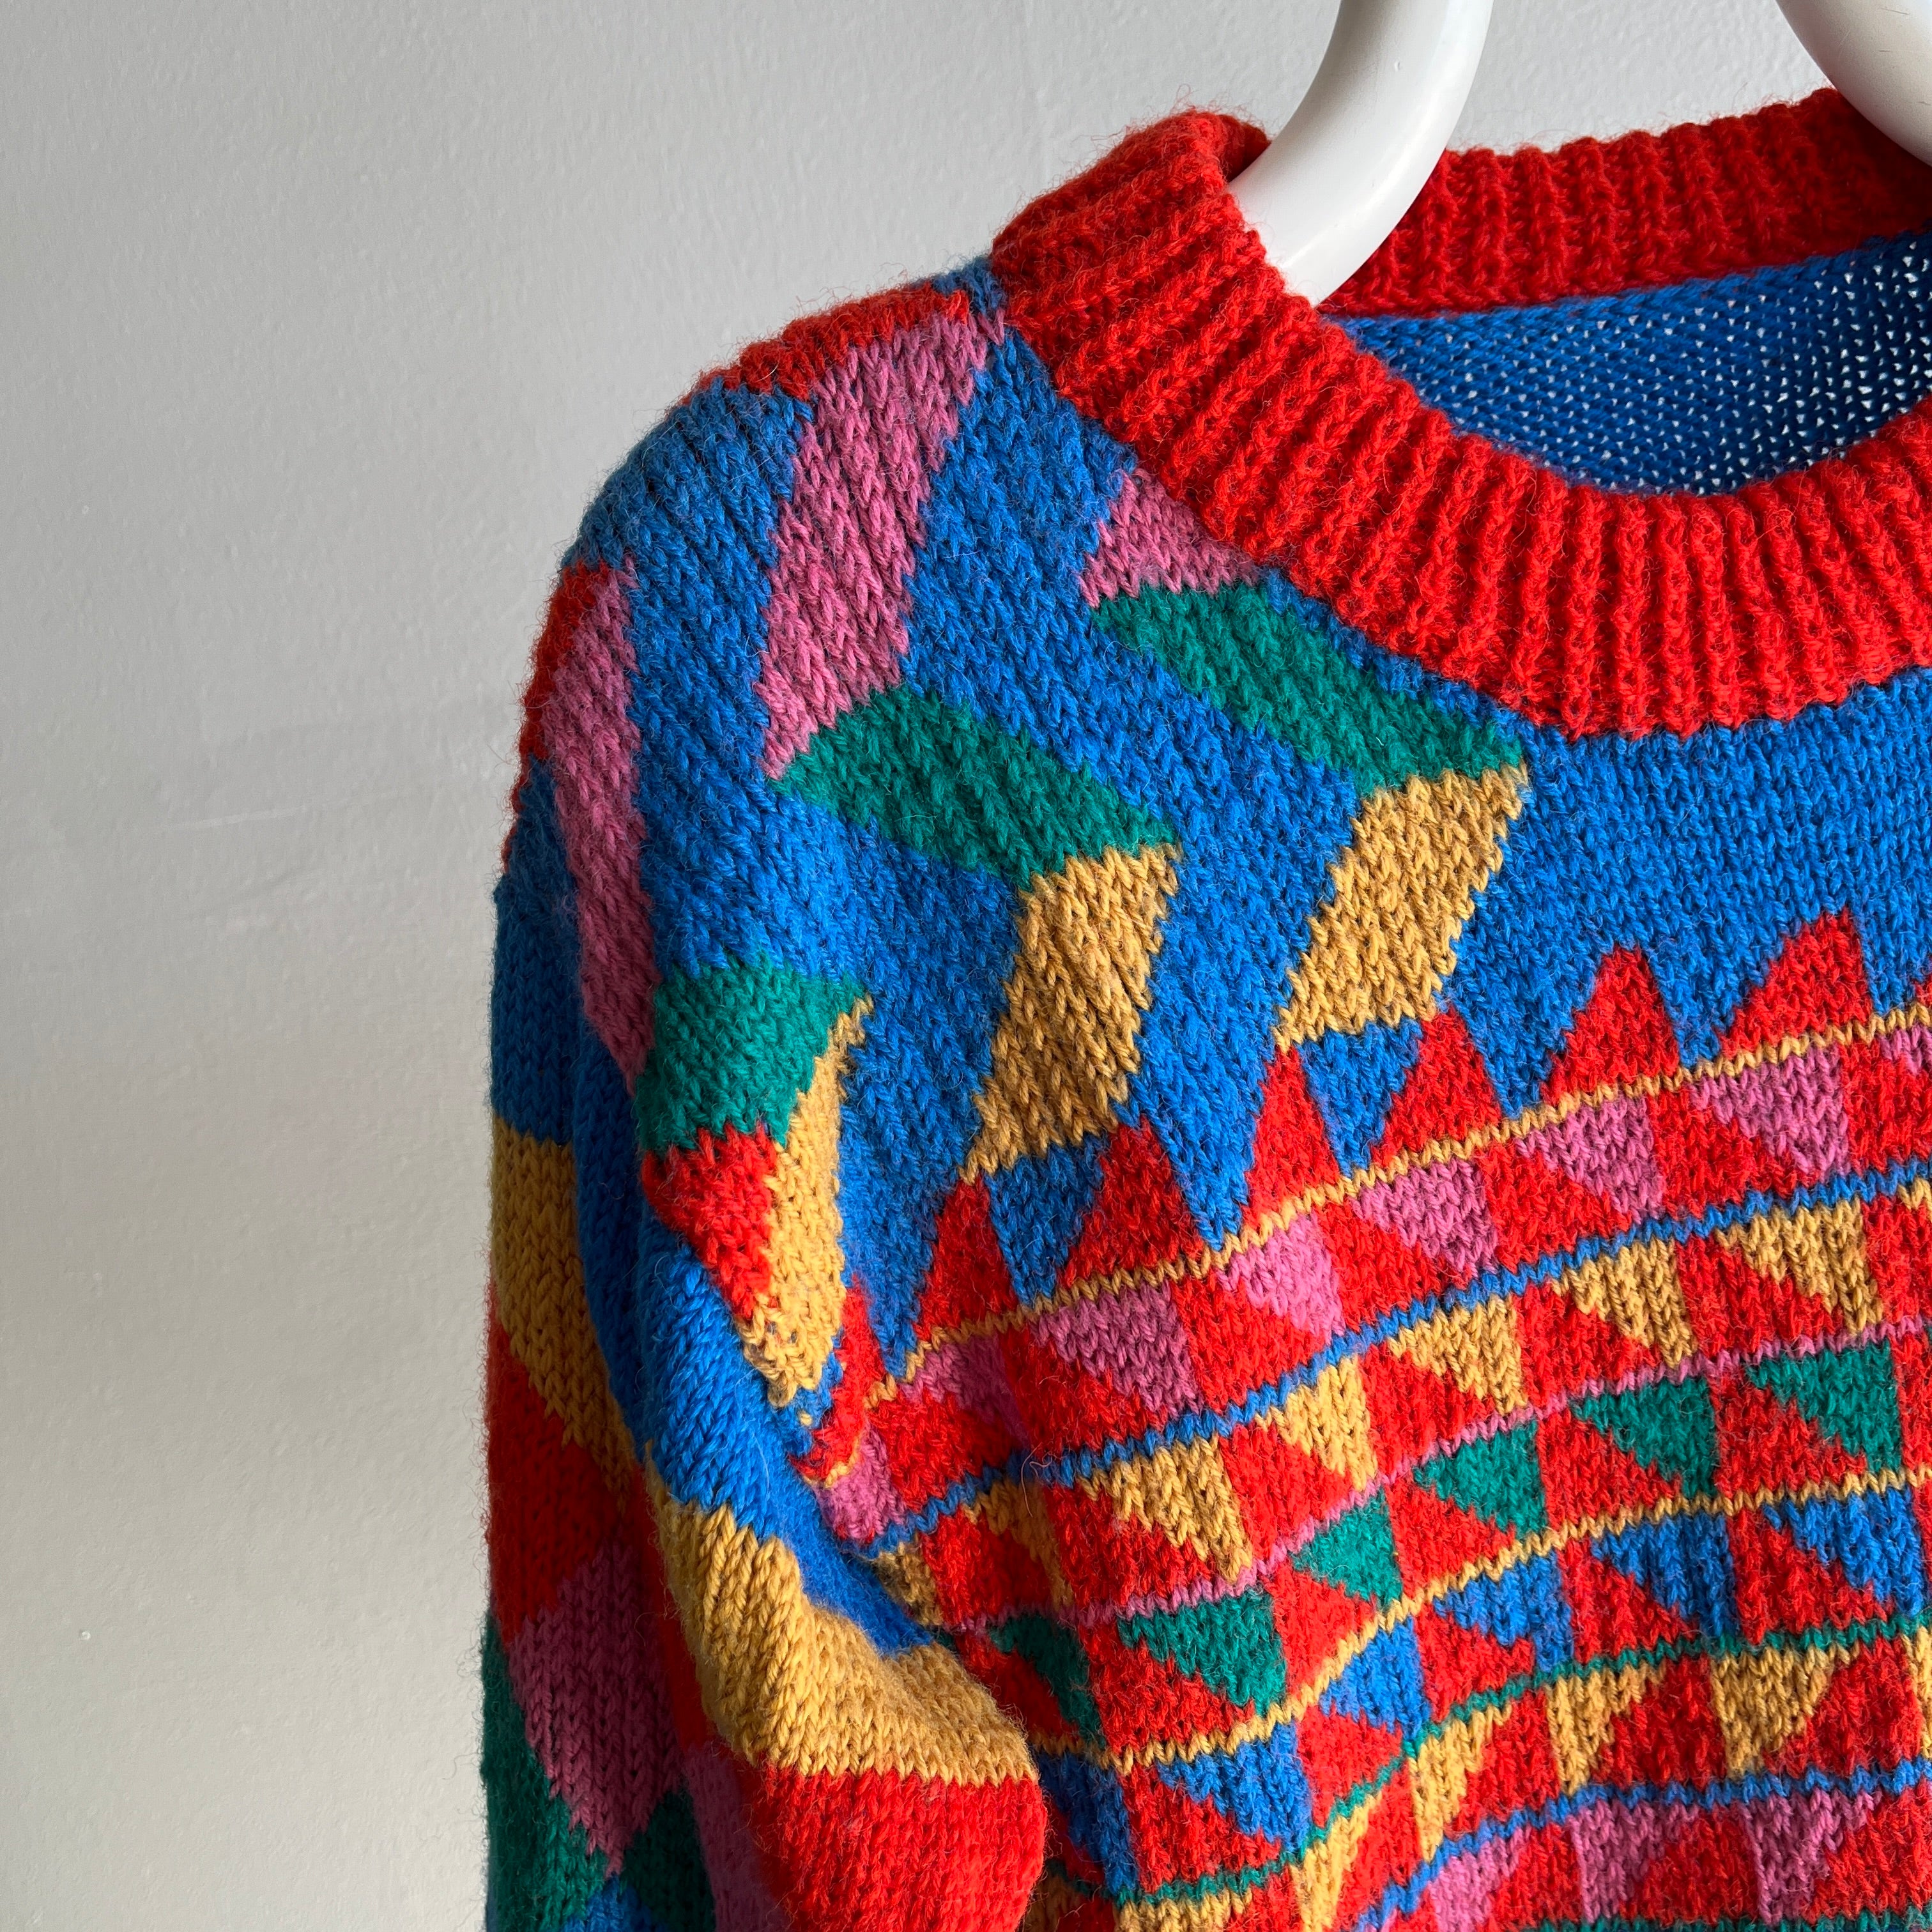 Pull géométrique en tricot à la main des années 1980 (je suis presque sûr)